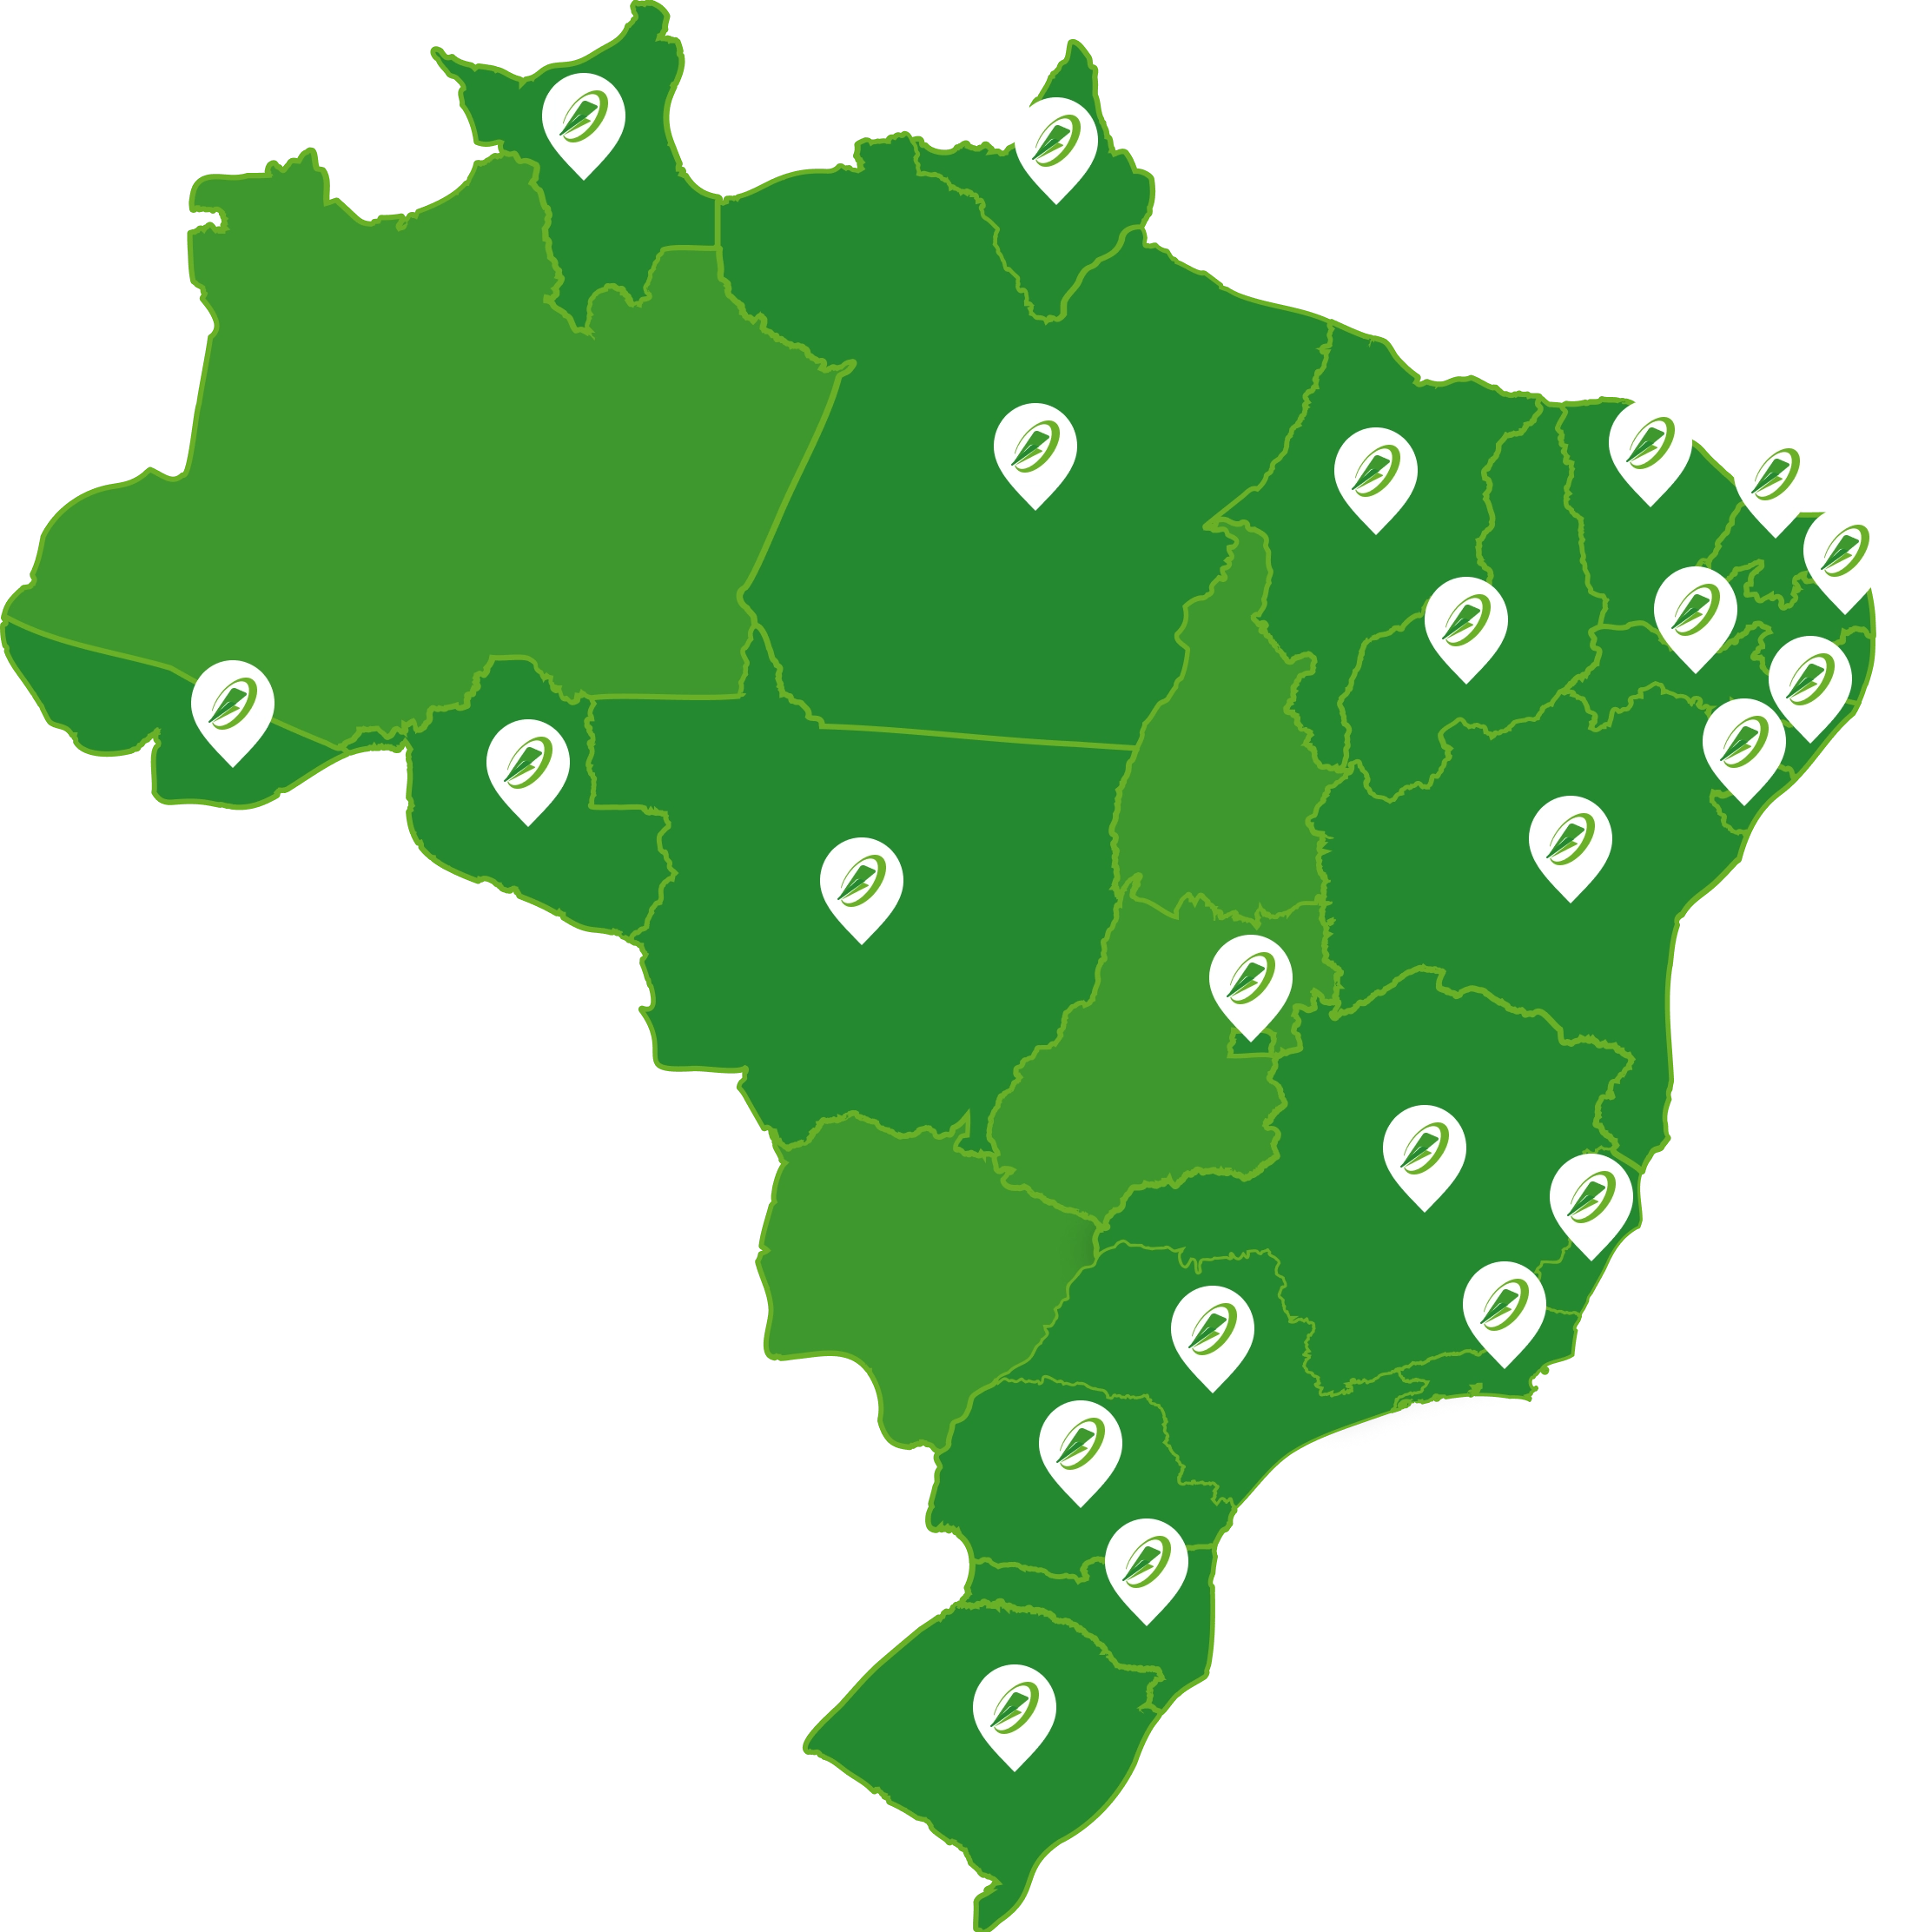 Mapa do Brasil com todas as localizações das lojas marcadas com um ponteiro